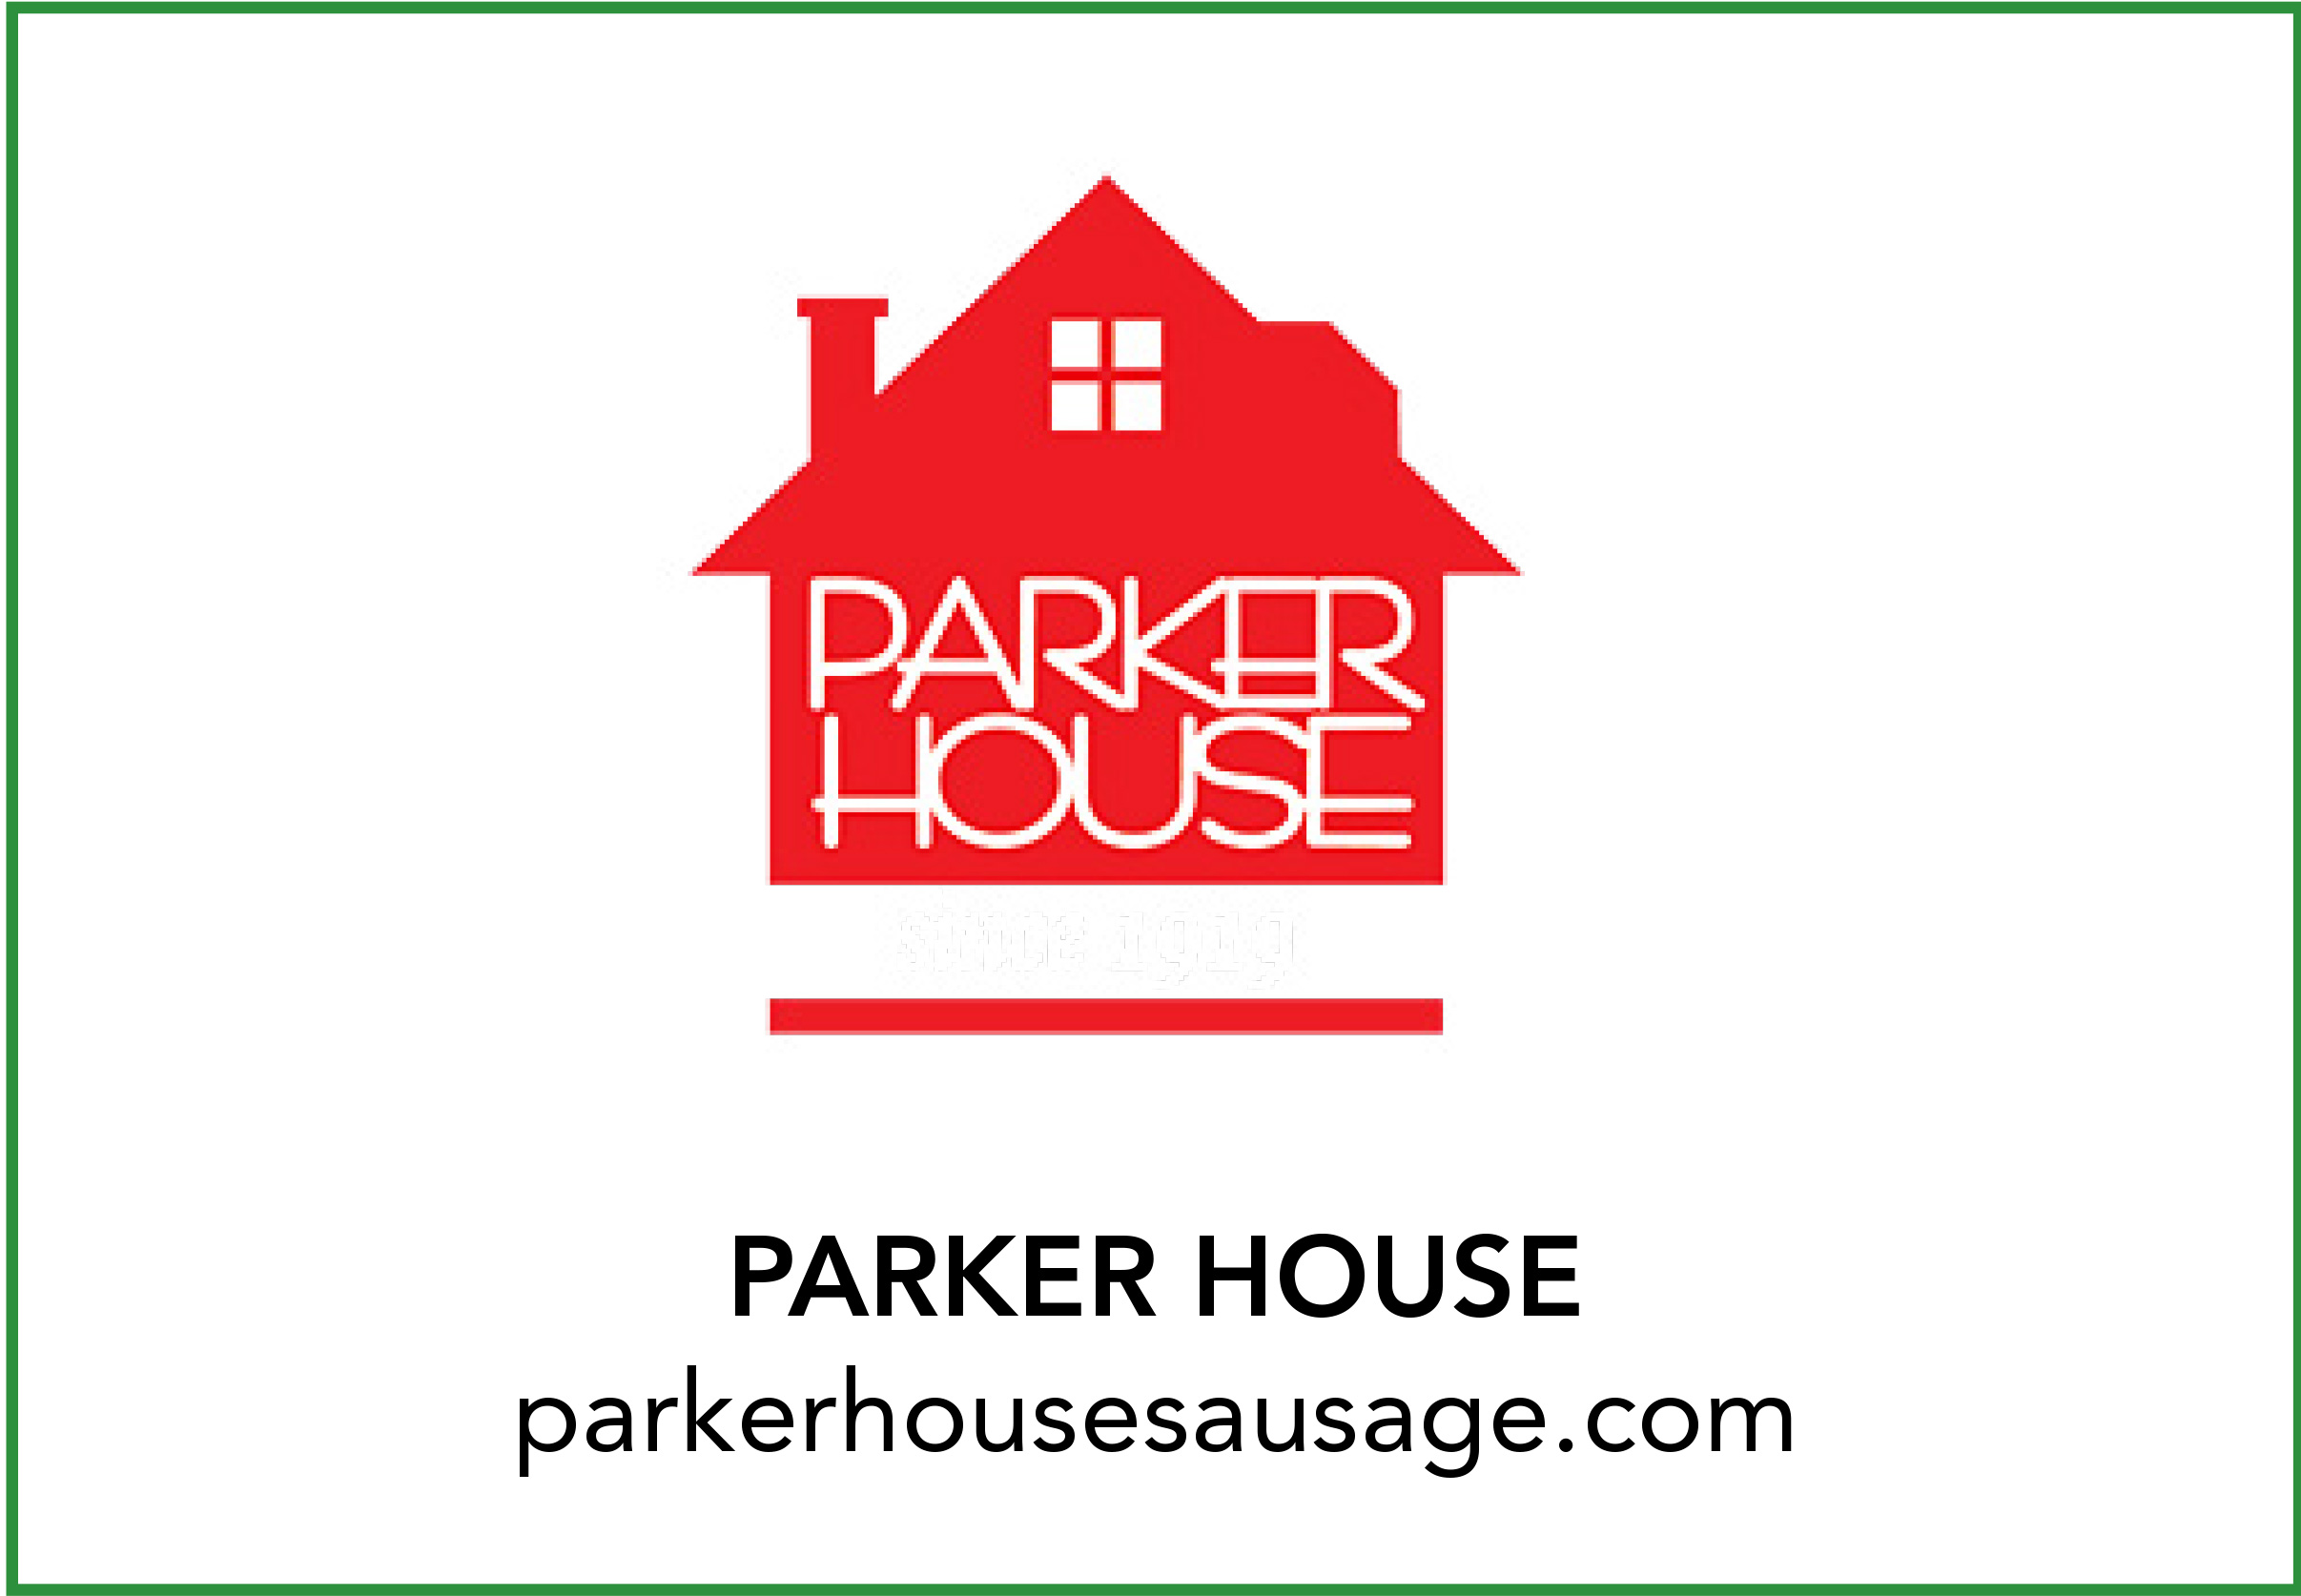 PARKER HOUSE